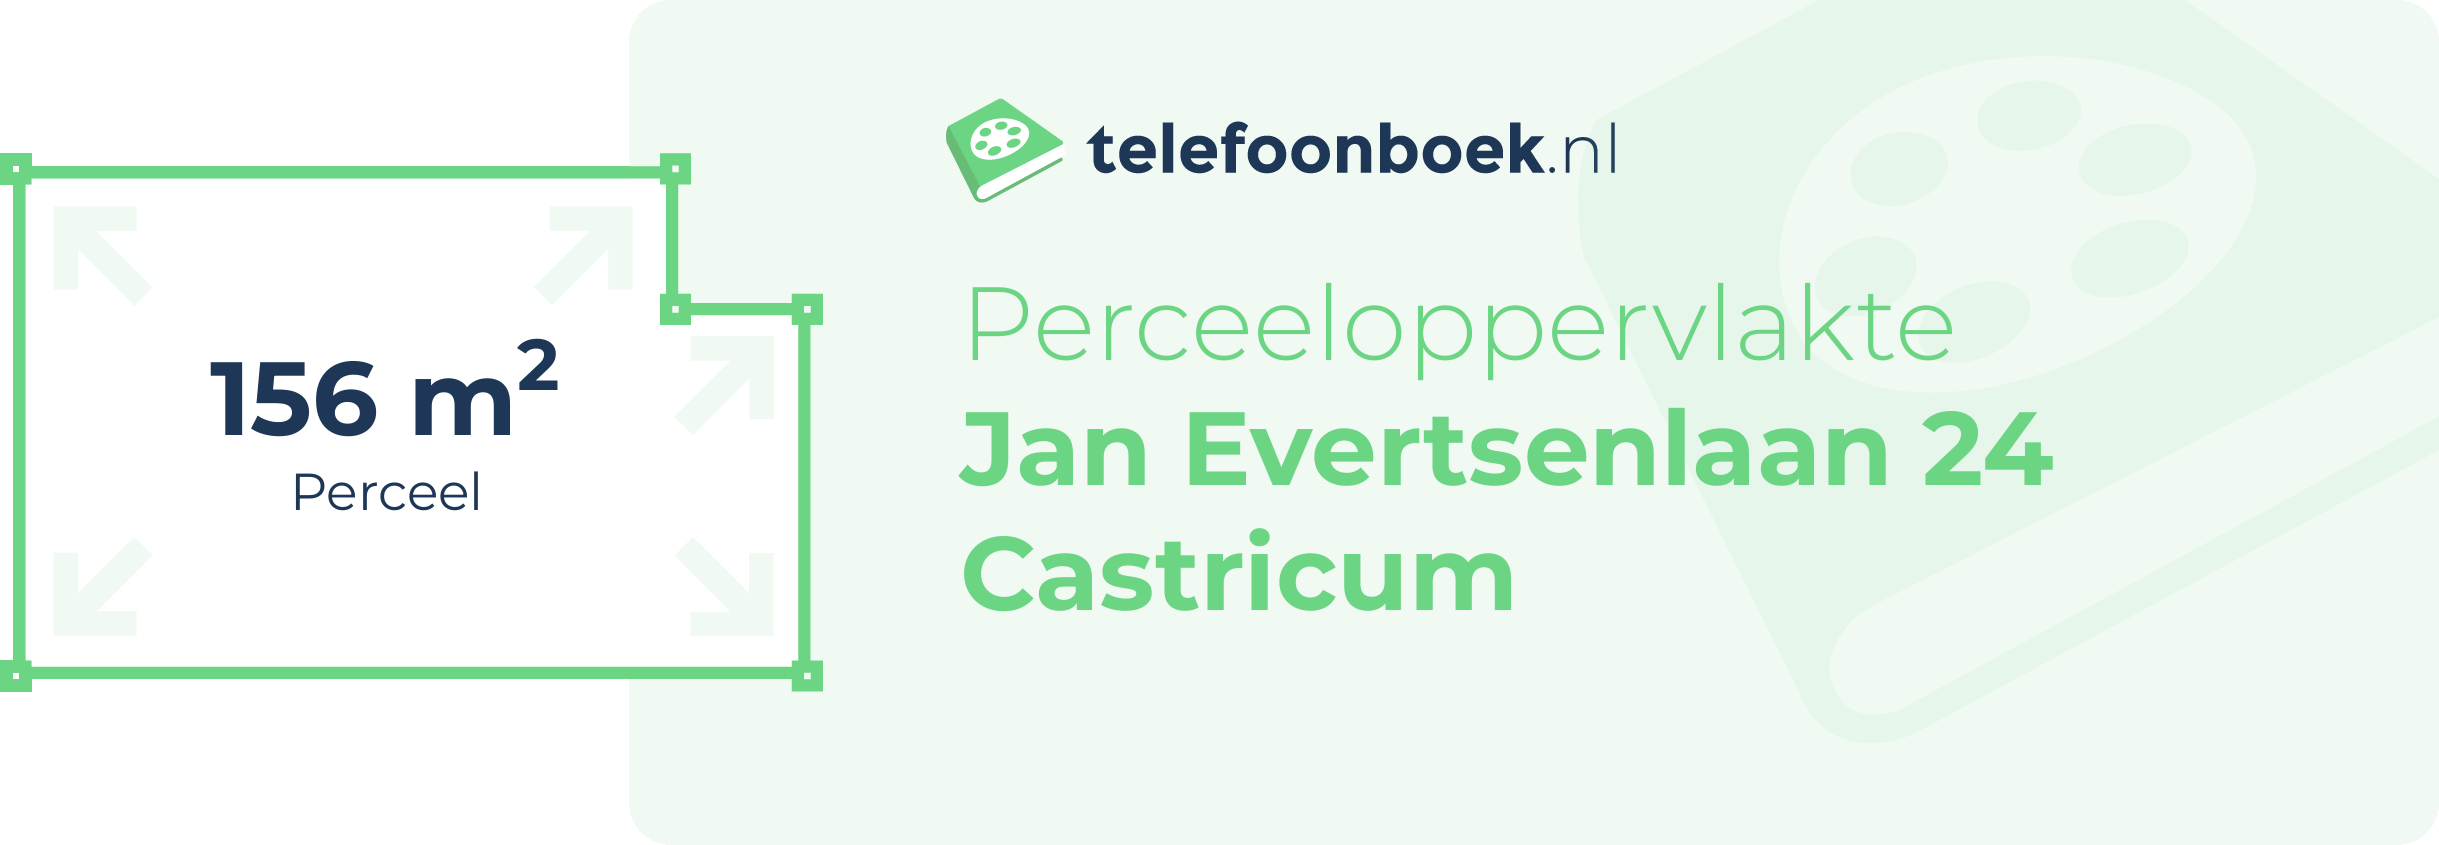 Perceeloppervlakte Jan Evertsenlaan 24 Castricum